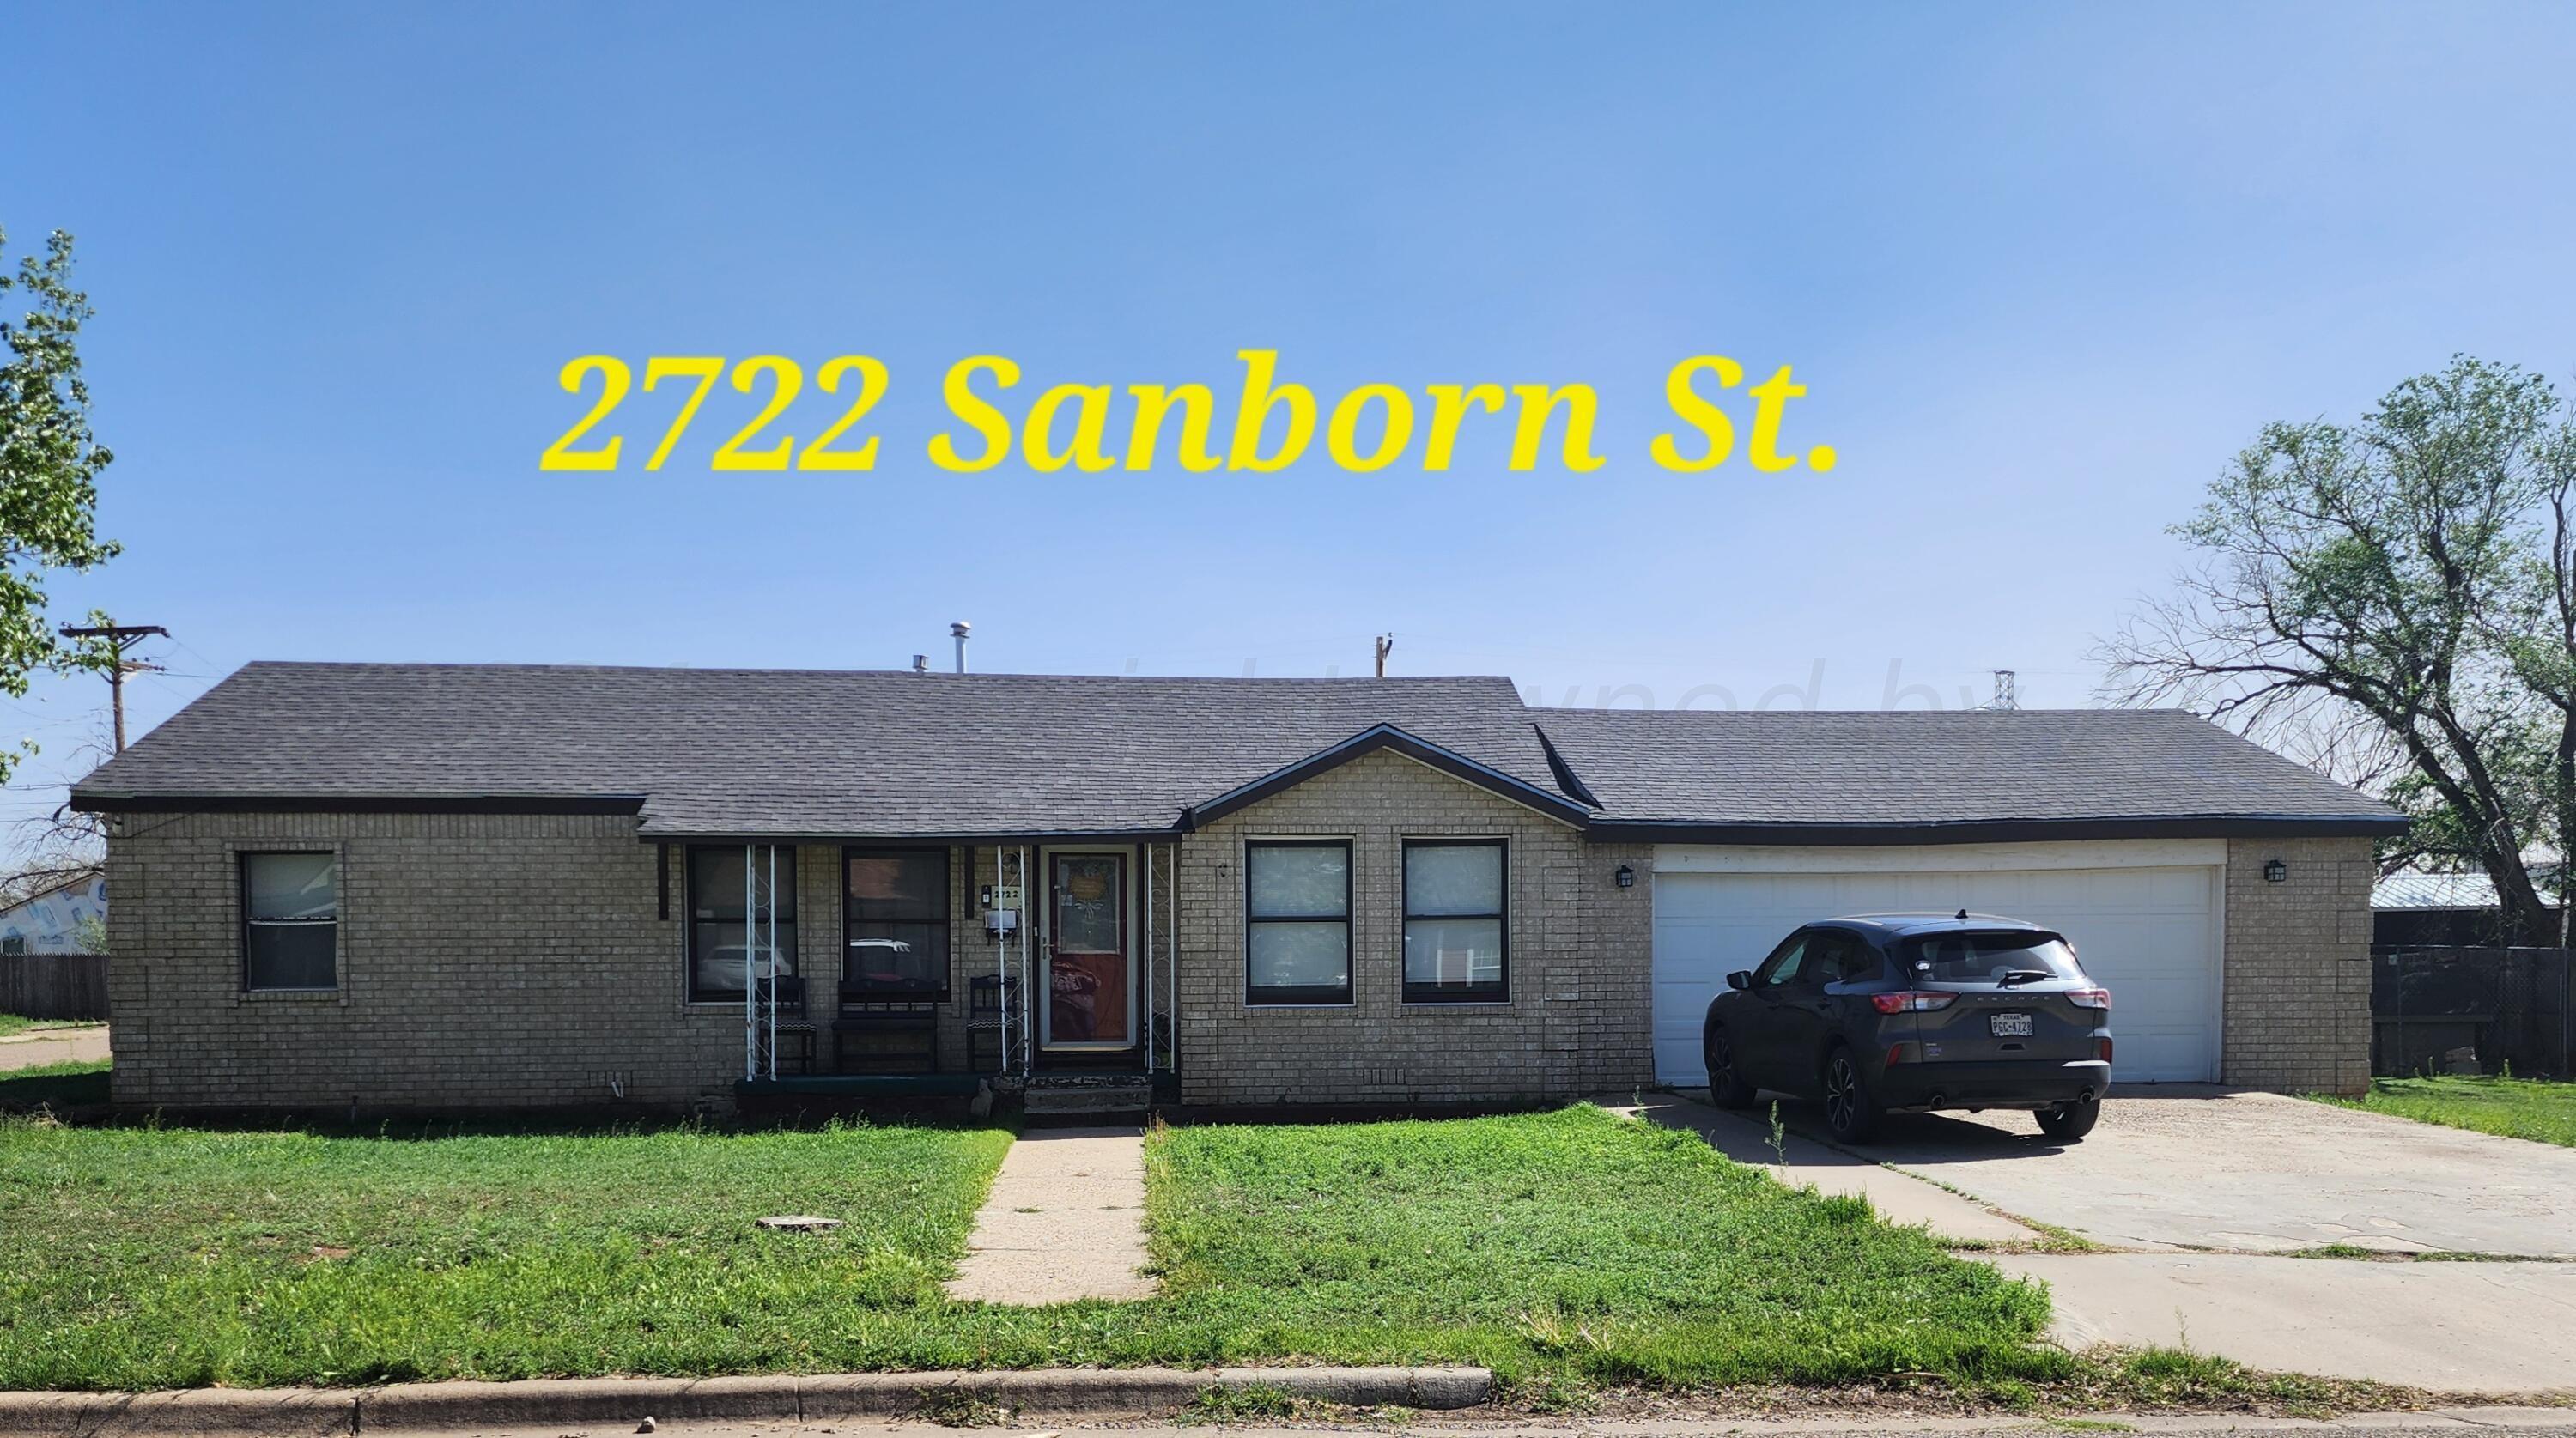 Property Image for 2722 SANBORN Street